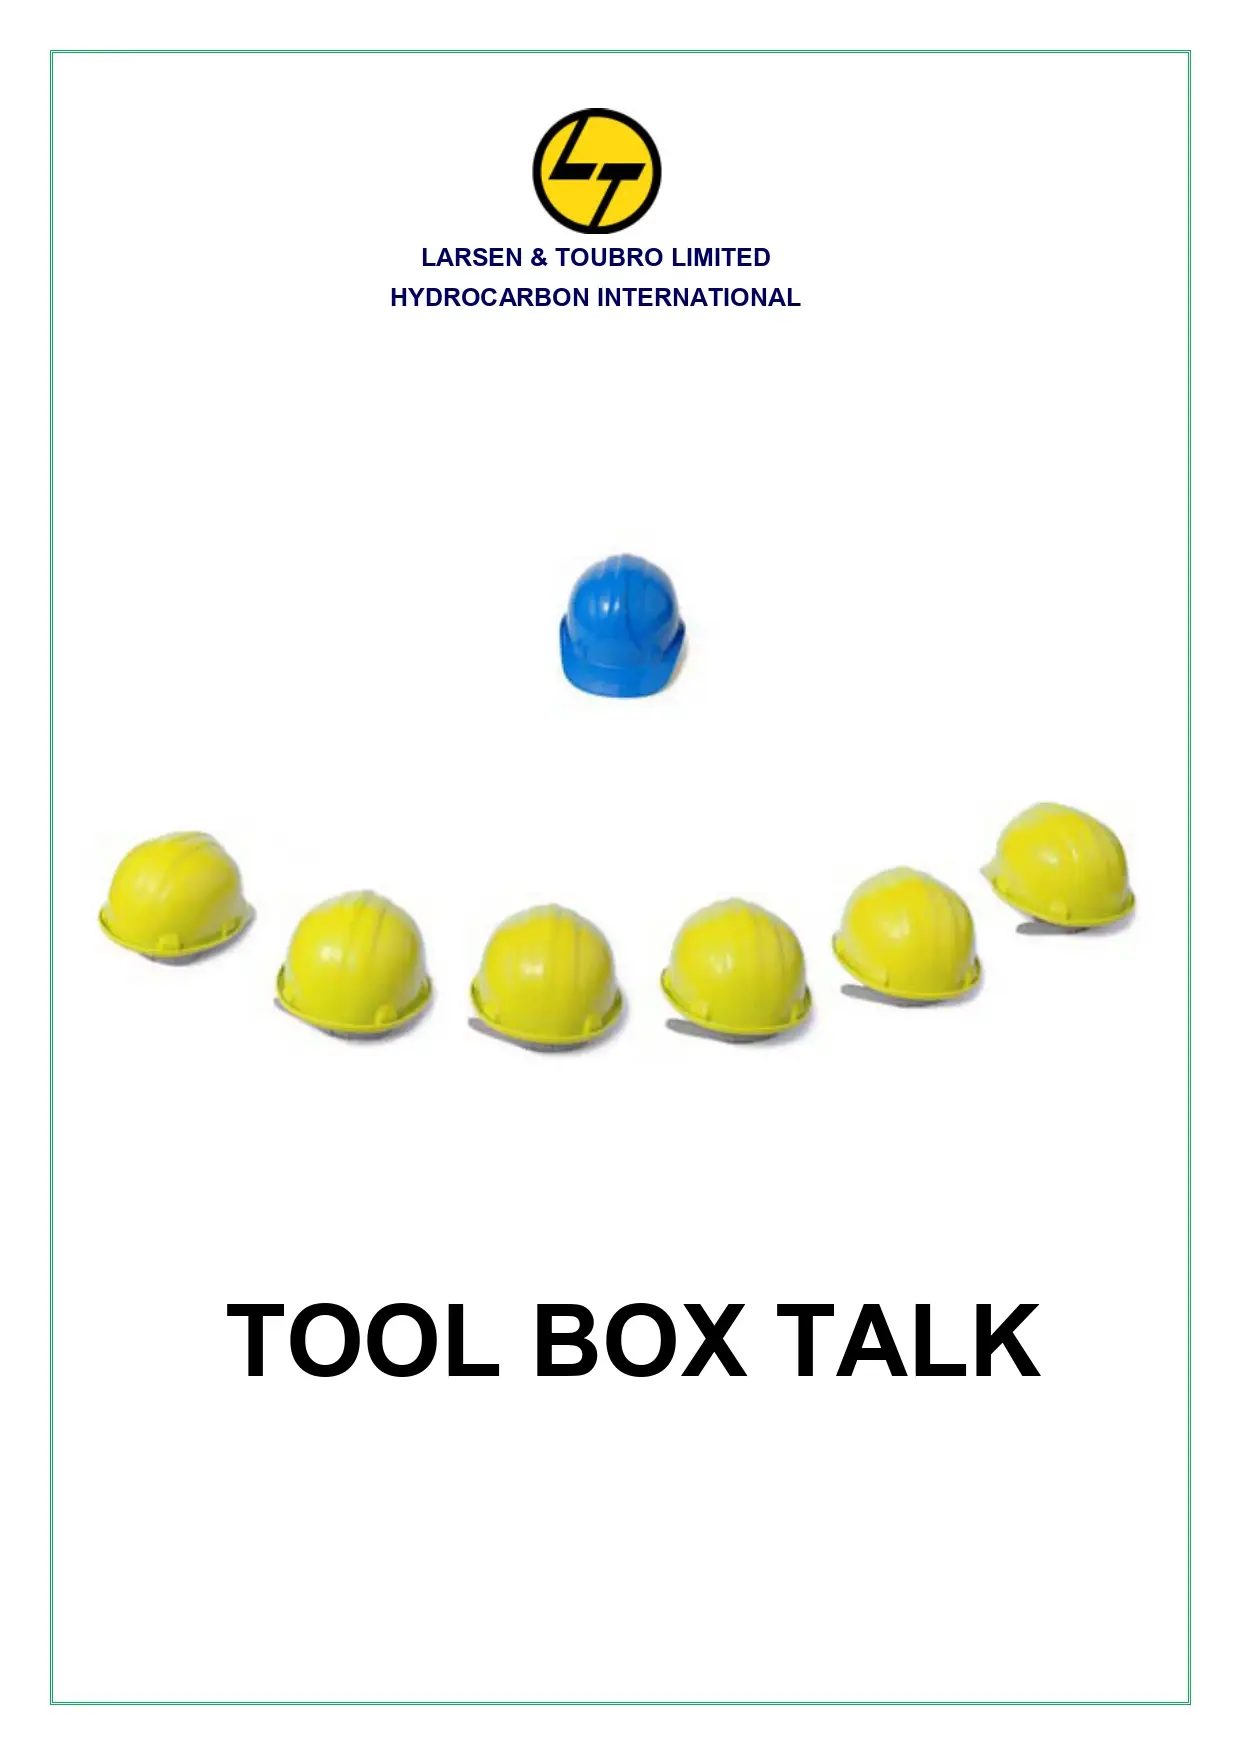 Hydrocarbon International: Tool Box Talk